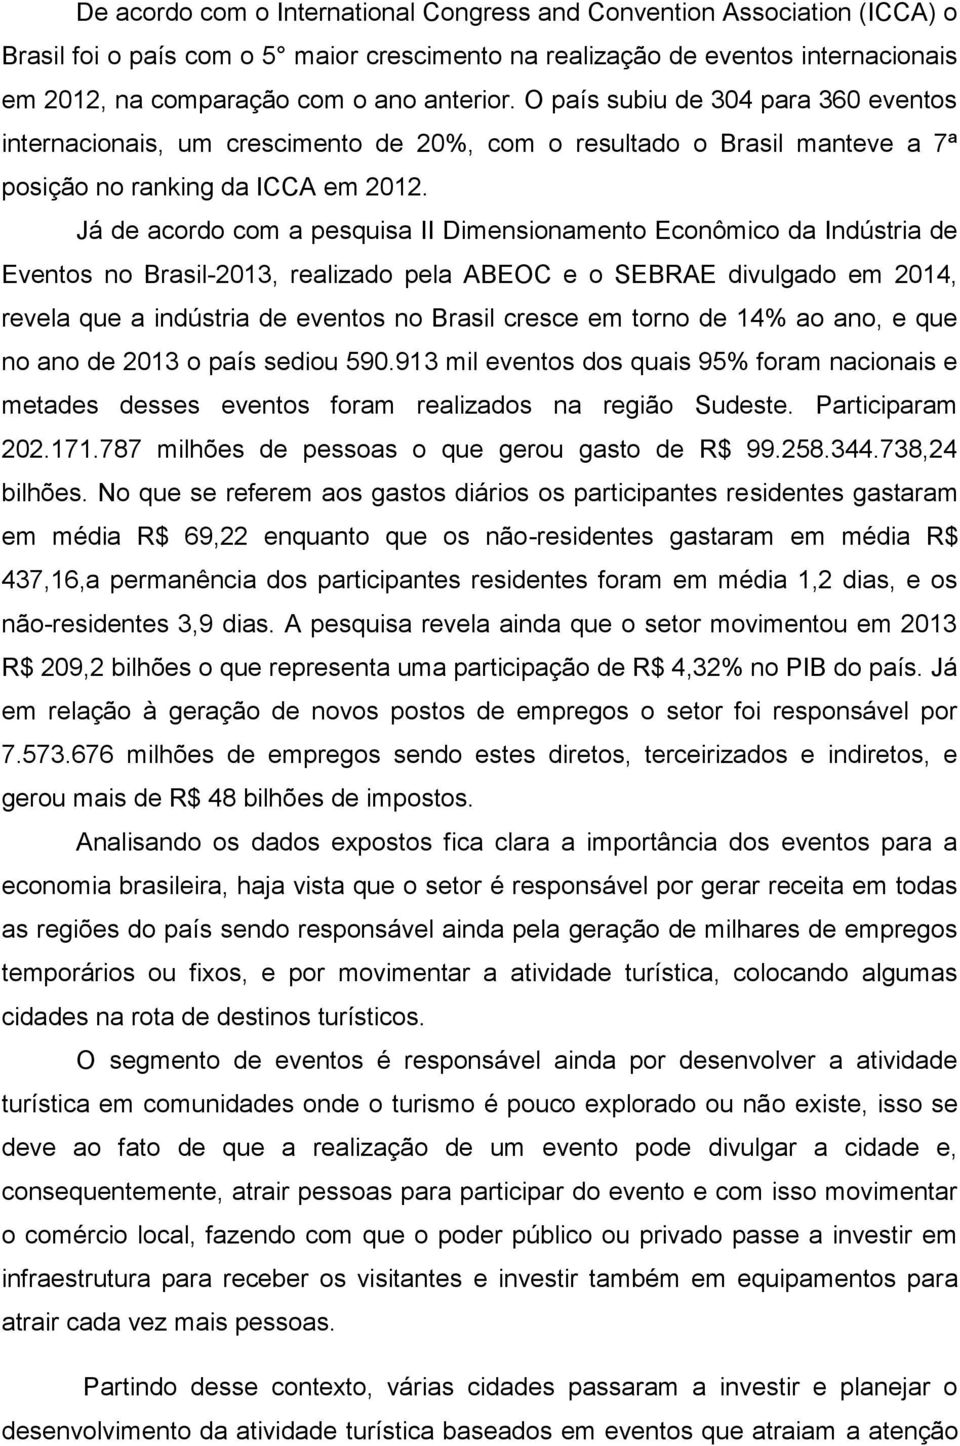 Já de acordo com a pesquisa II Dimensionamento Econômico da Indústria de Eventos no Brasil-2013, realizado pela ABEOC e o SEBRAE divulgado em 2014, revela que a indústria de eventos no Brasil cresce